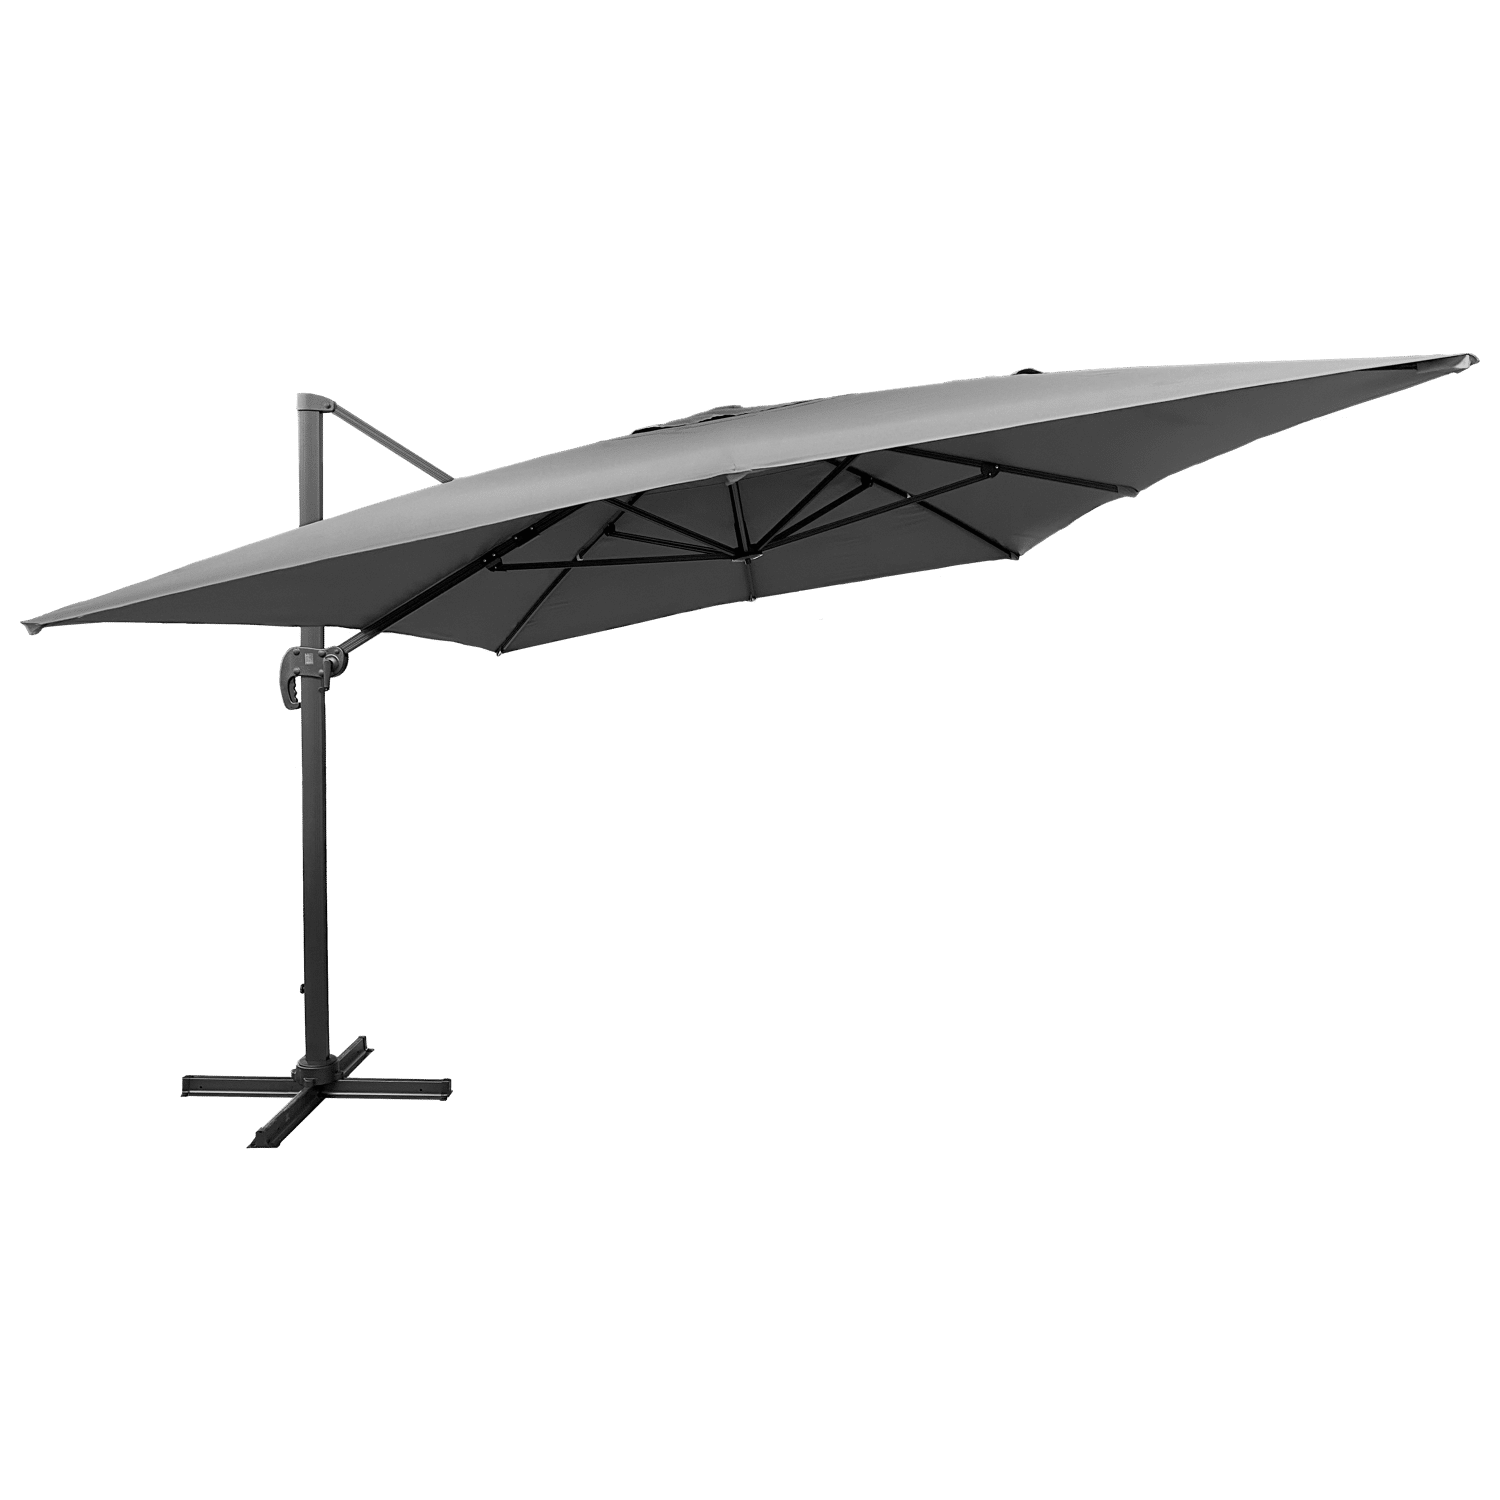 Guarda-chuva MOLOKAI rectangular de 3x4m cinzento + tampa